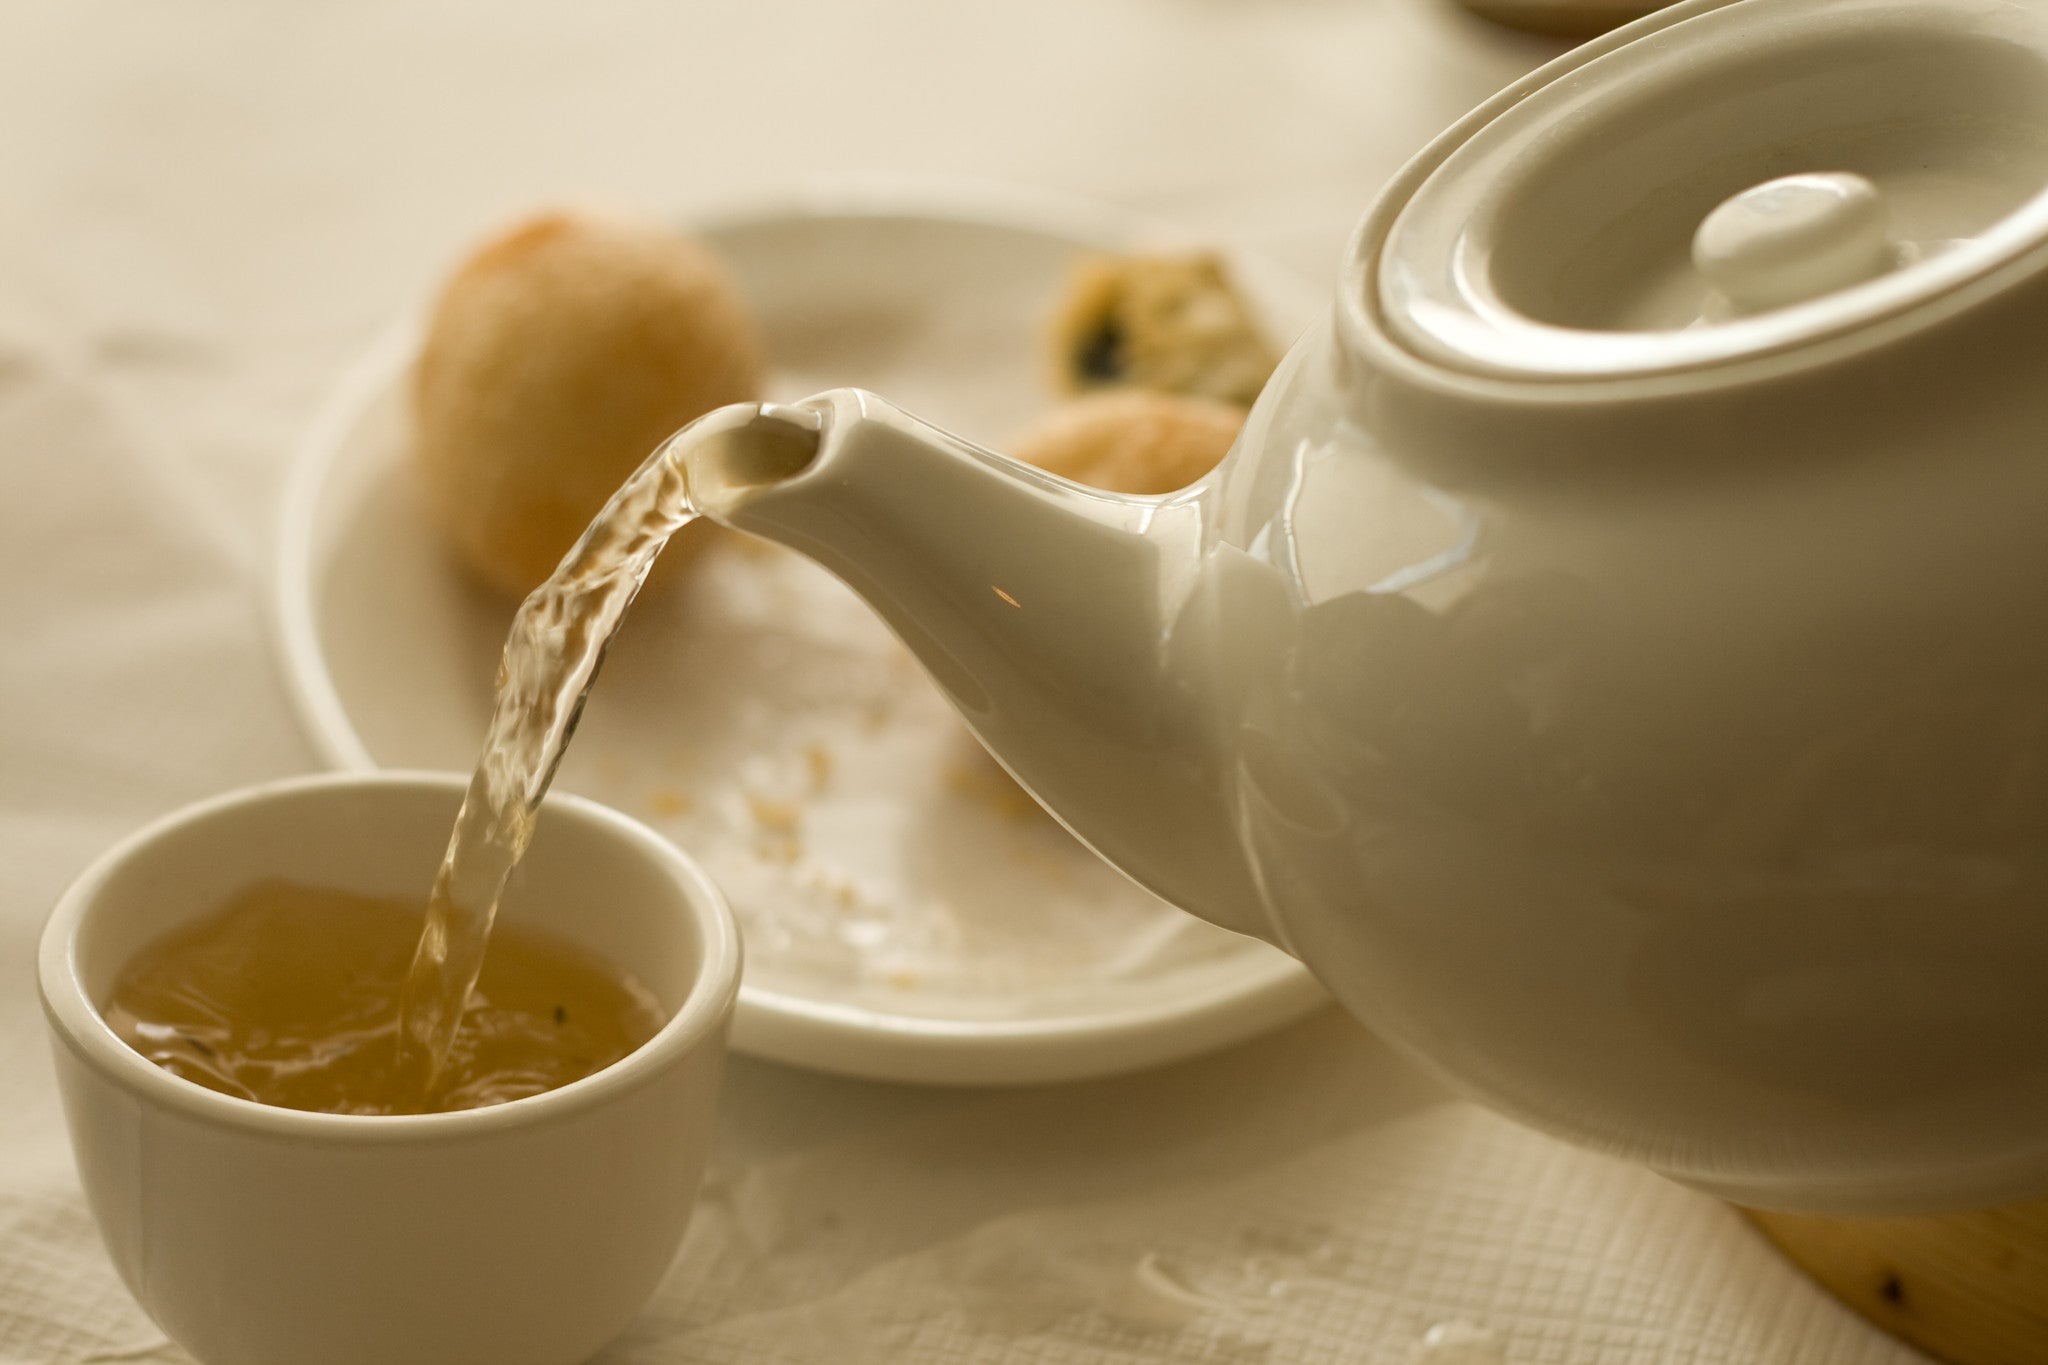 A cup of liber tea. Чай в чайнике. Чашка чая. Наливает чай. Наливает чай из чайника.